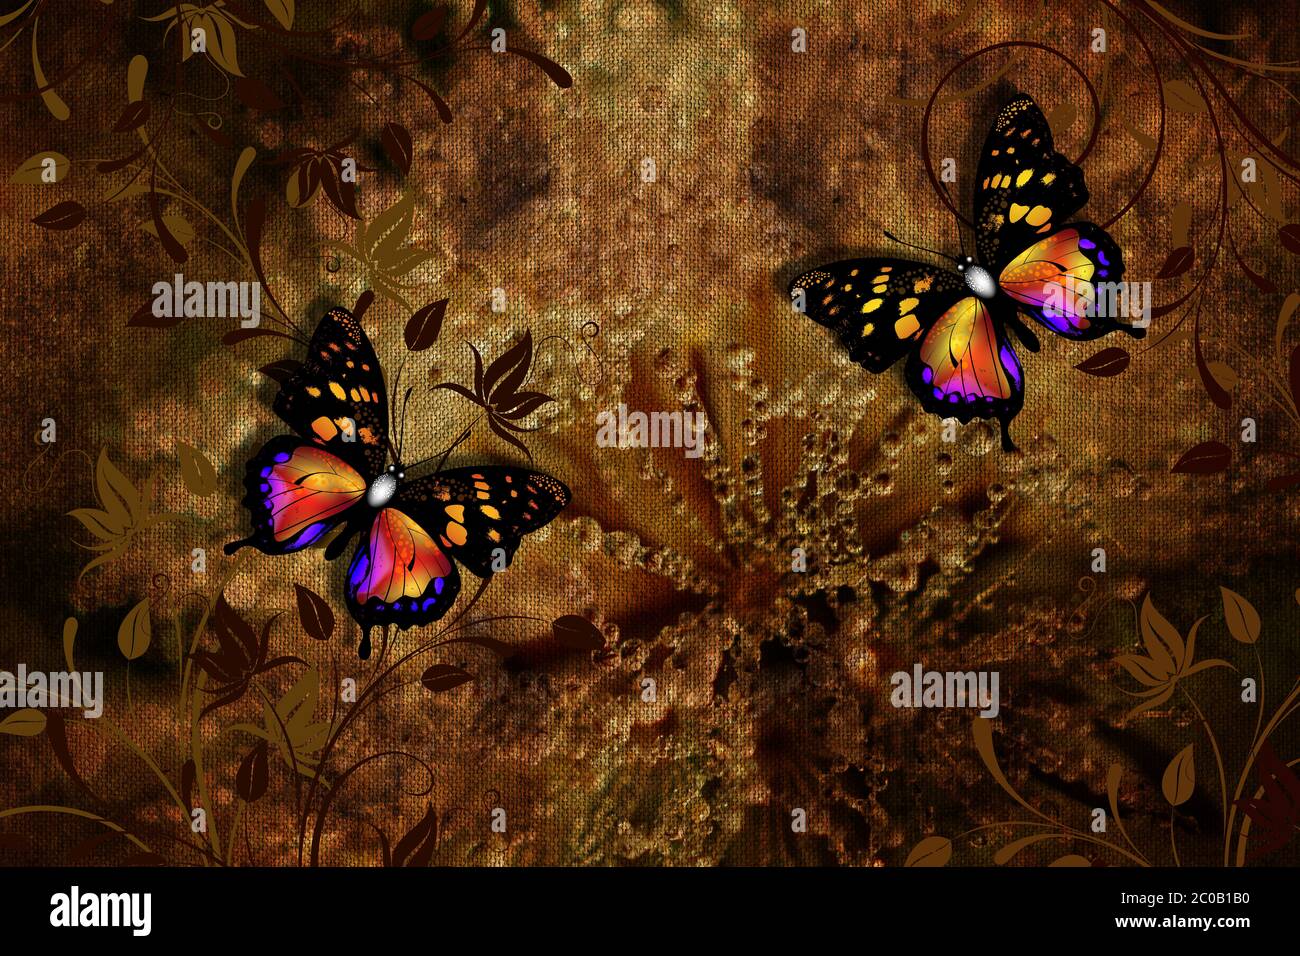 Papel pintado mariposas y colibrís con naturaleza artística